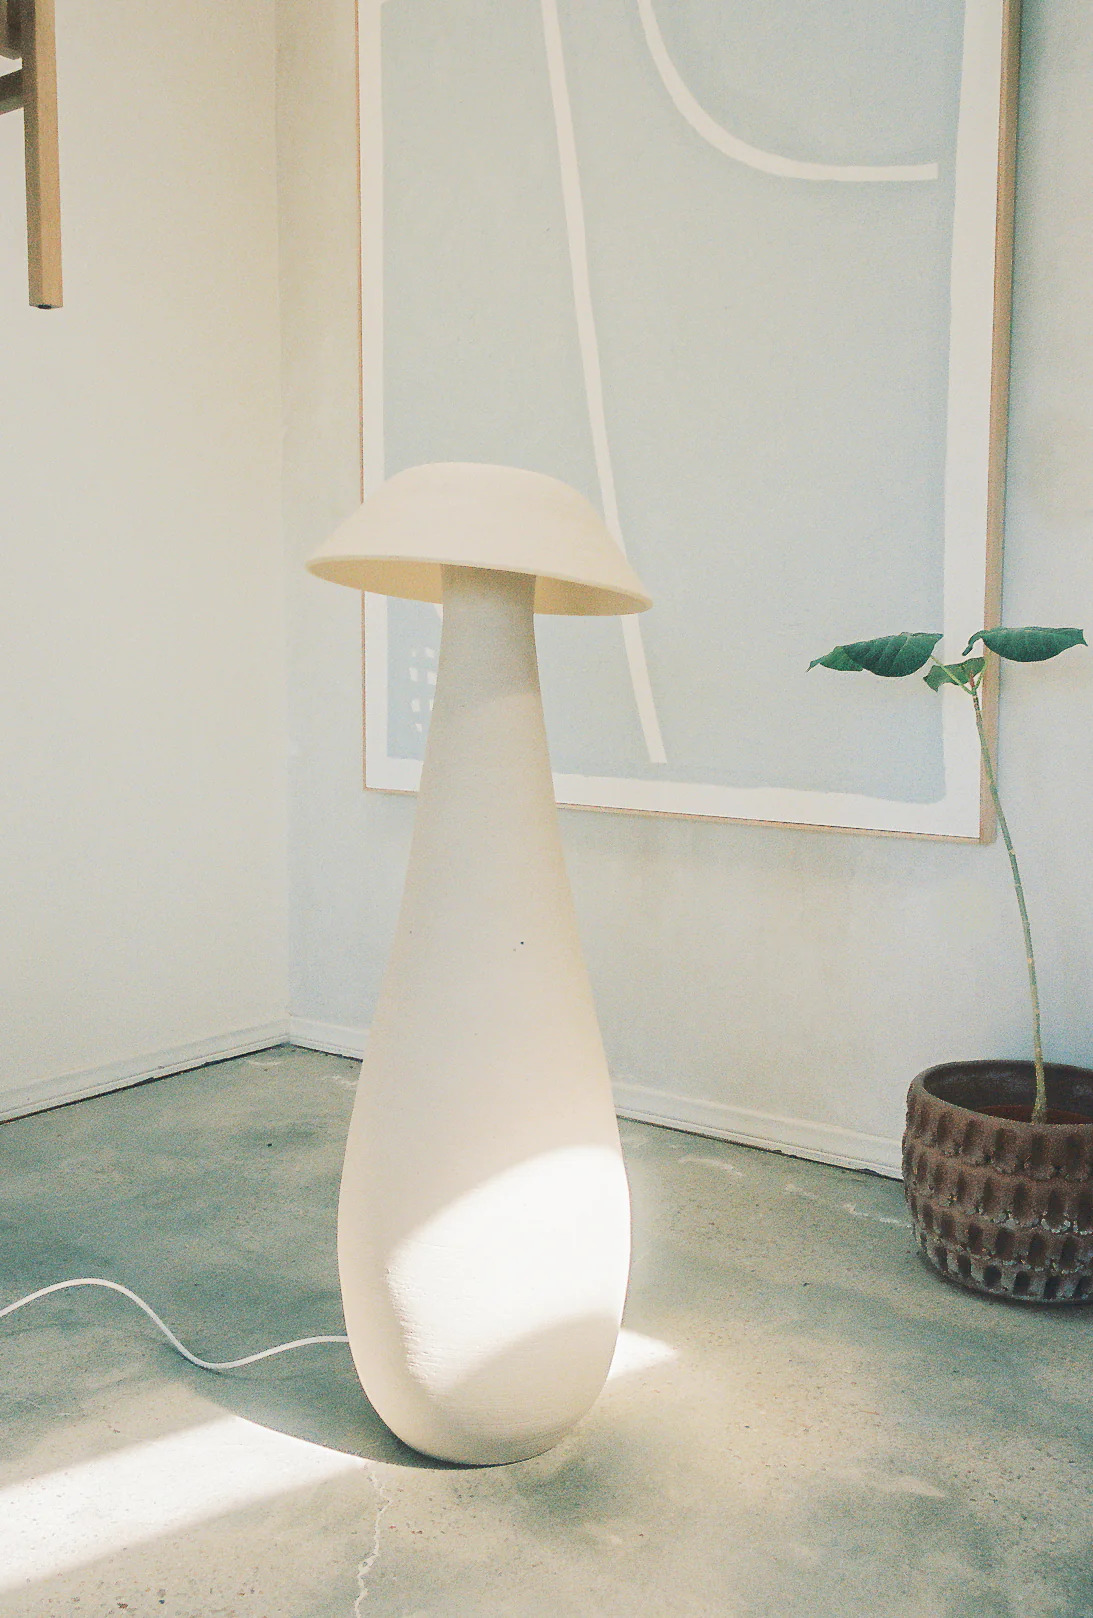 Mushroom Lamps by Nicholas Pourfard 2